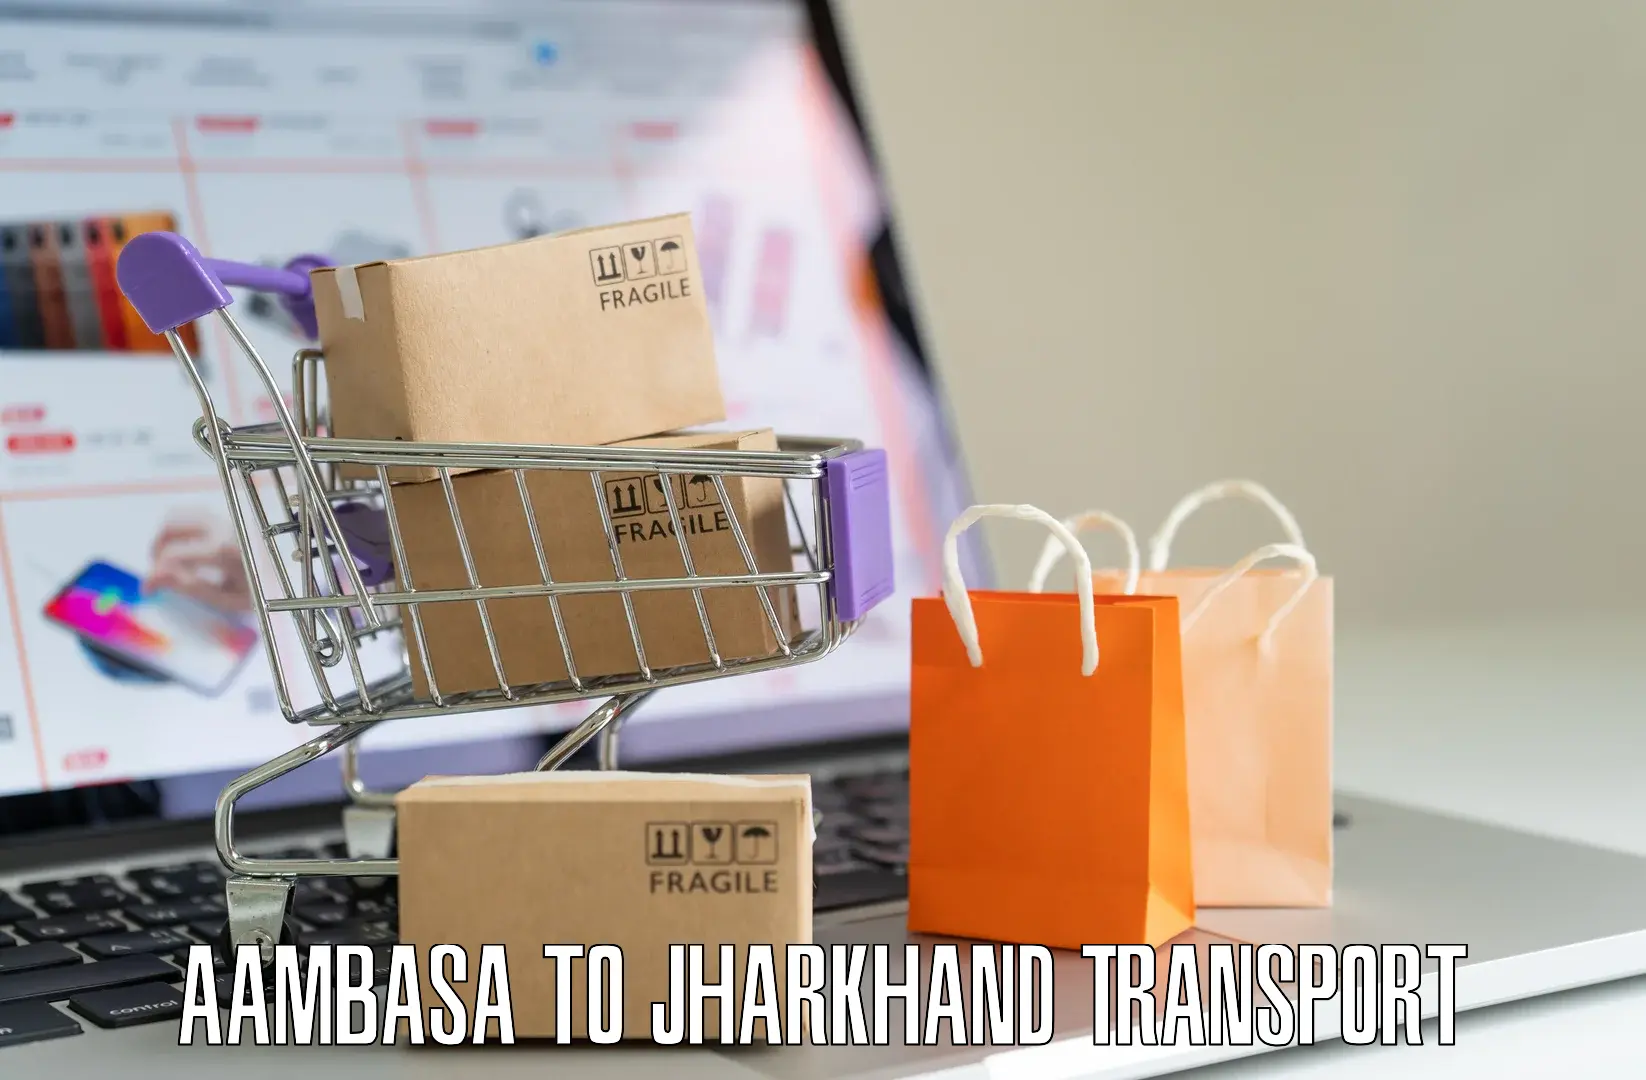 Shipping services Aambasa to Barharwa